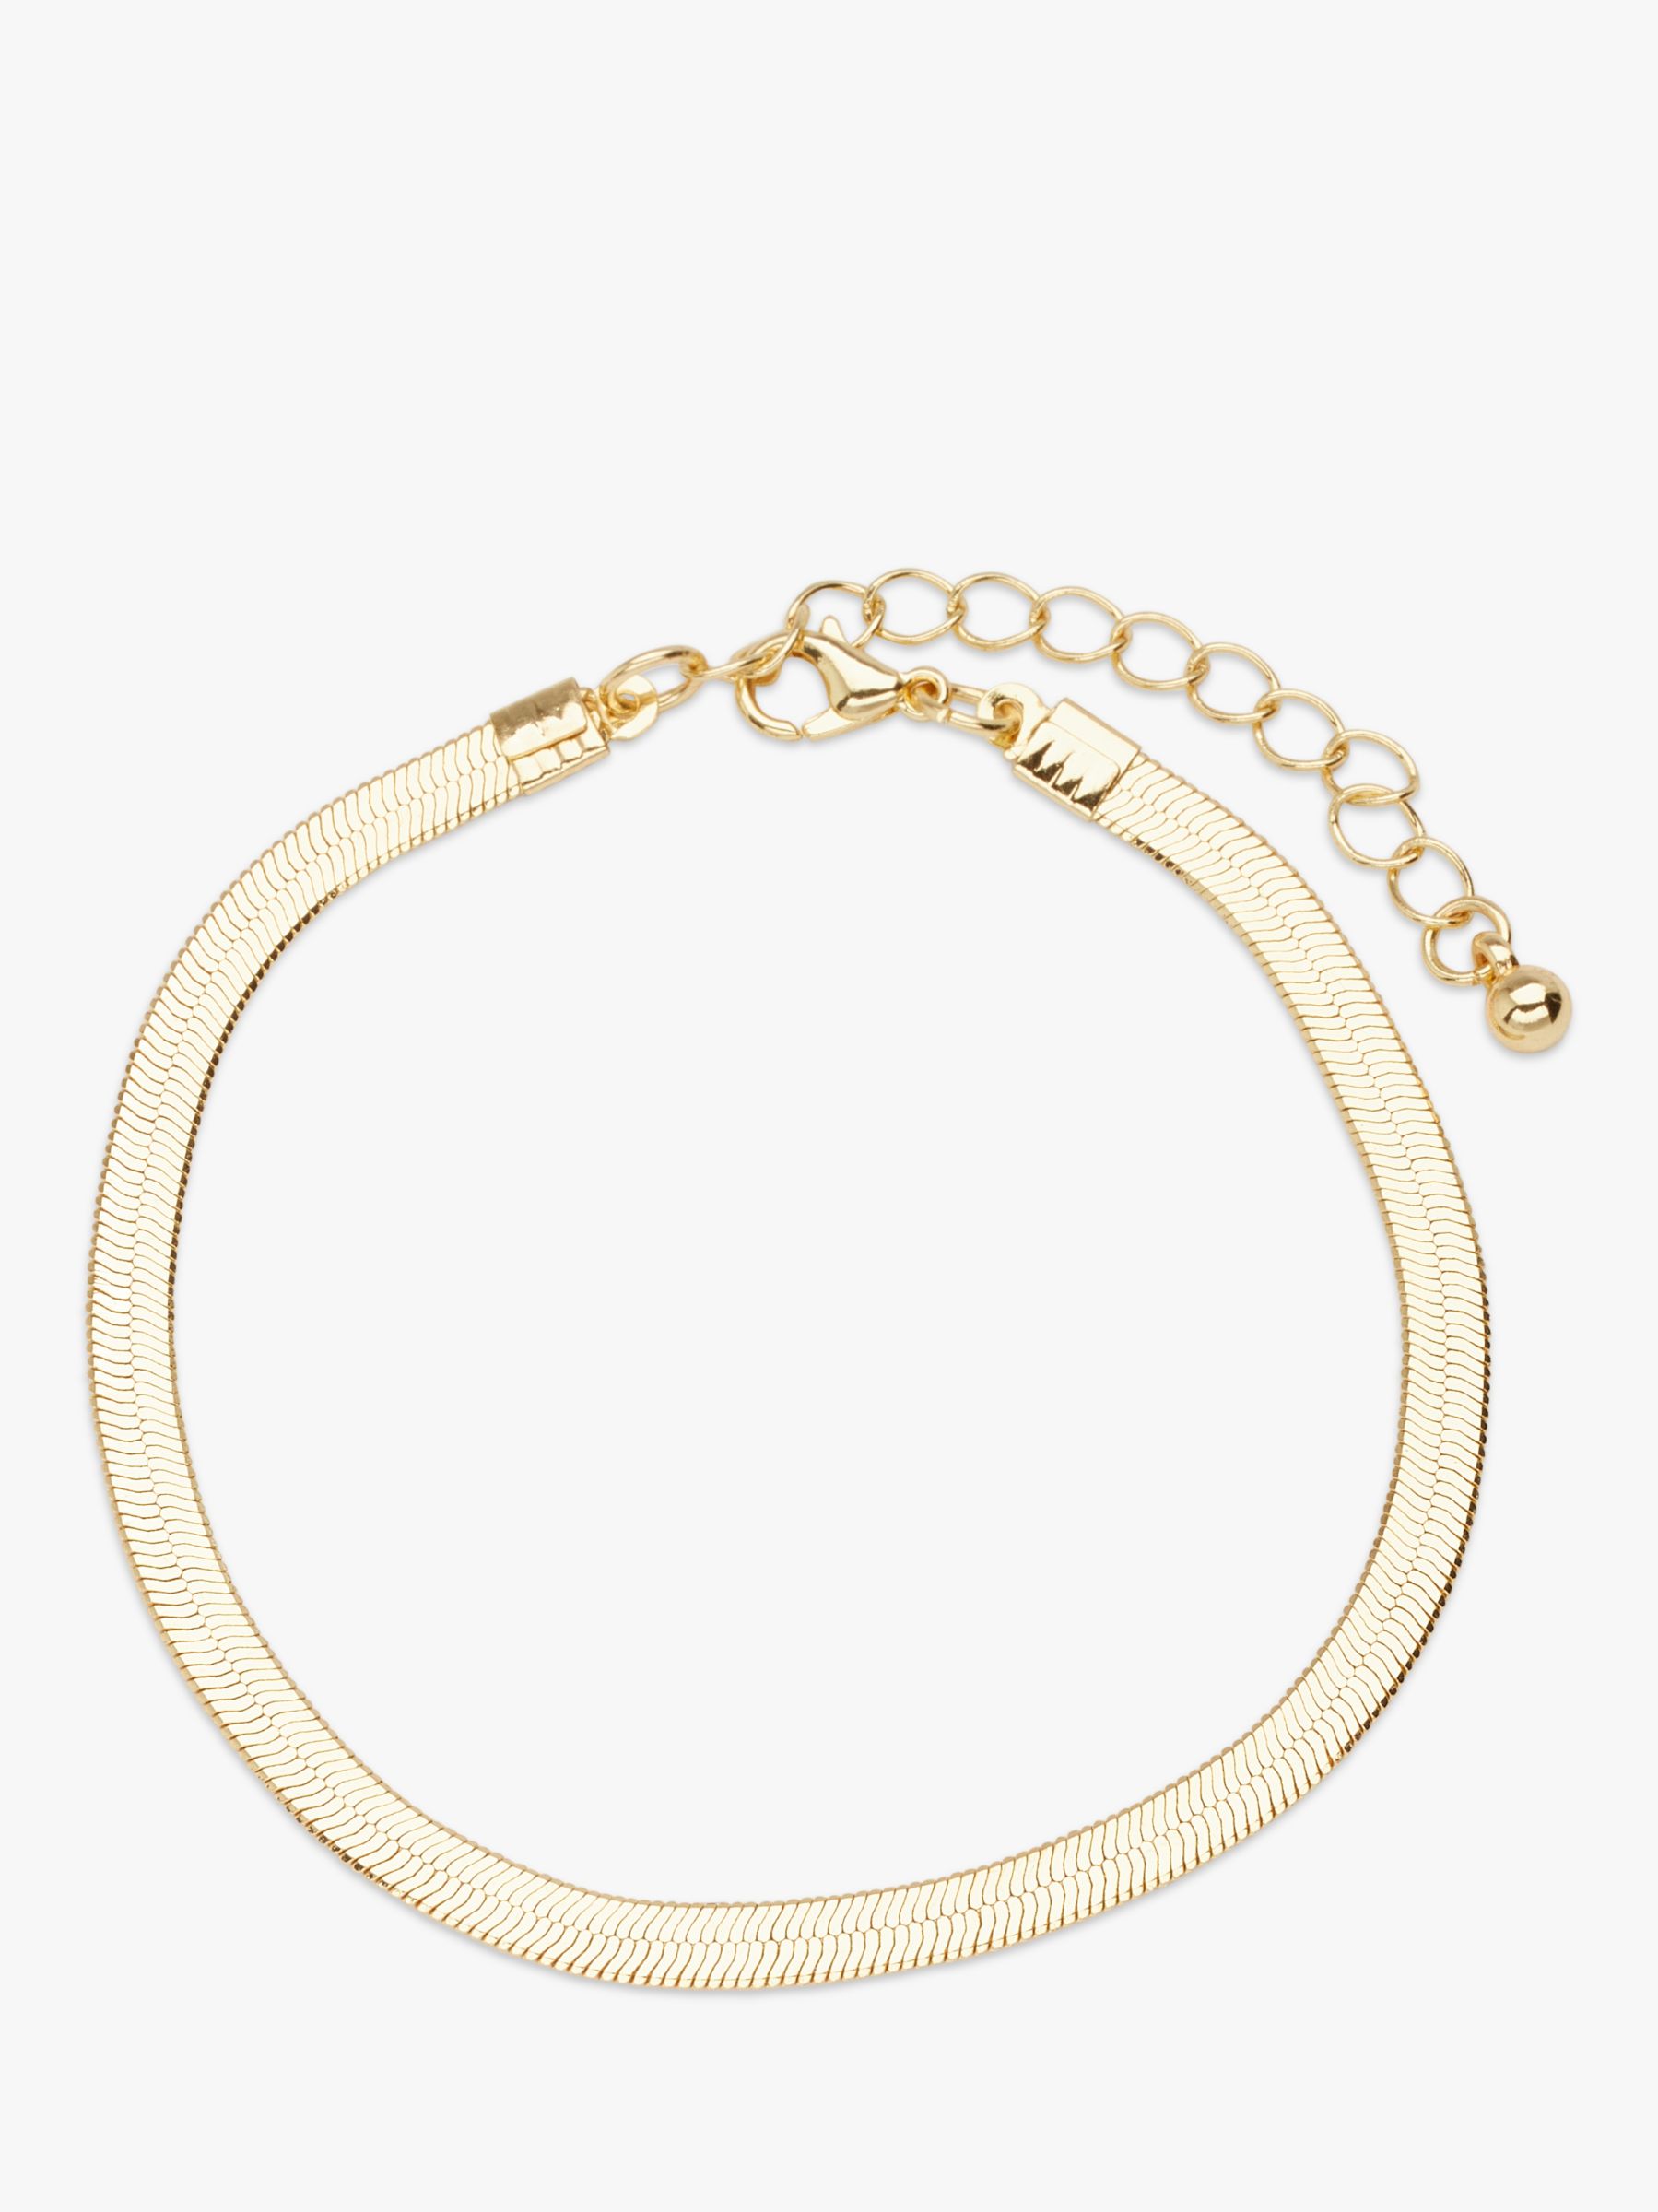 Snake Chain Bracelet Gold / Flat